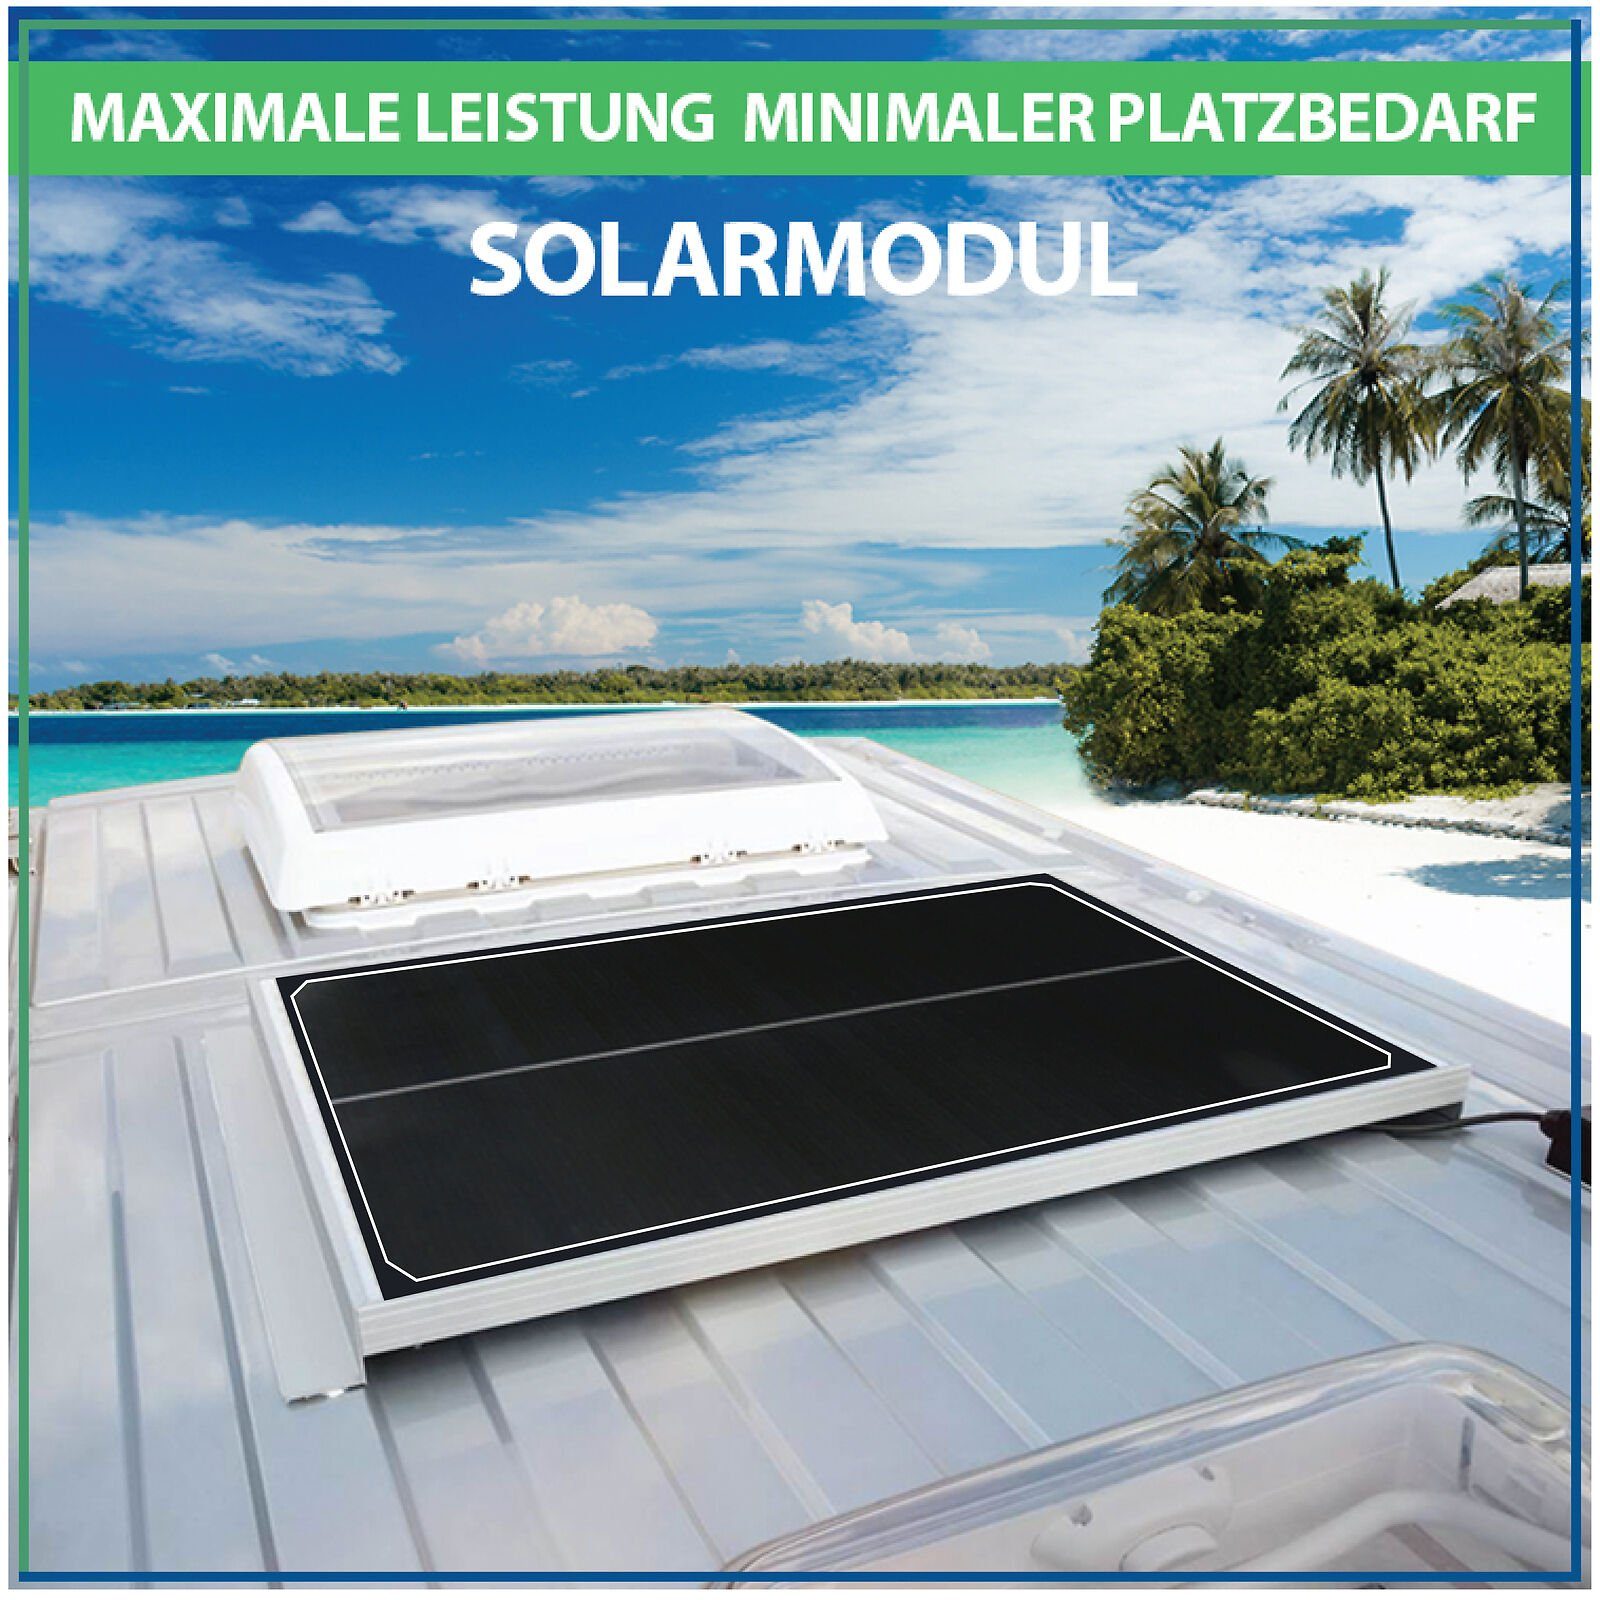 Campergold Solaranlage Solarpanel 12V, Camper, Photovoltaik cm 100W Rahmen-46 Solarmodul & für Wohnwagen Solarmodul Schwarz Monokristallines - Wohnmobile